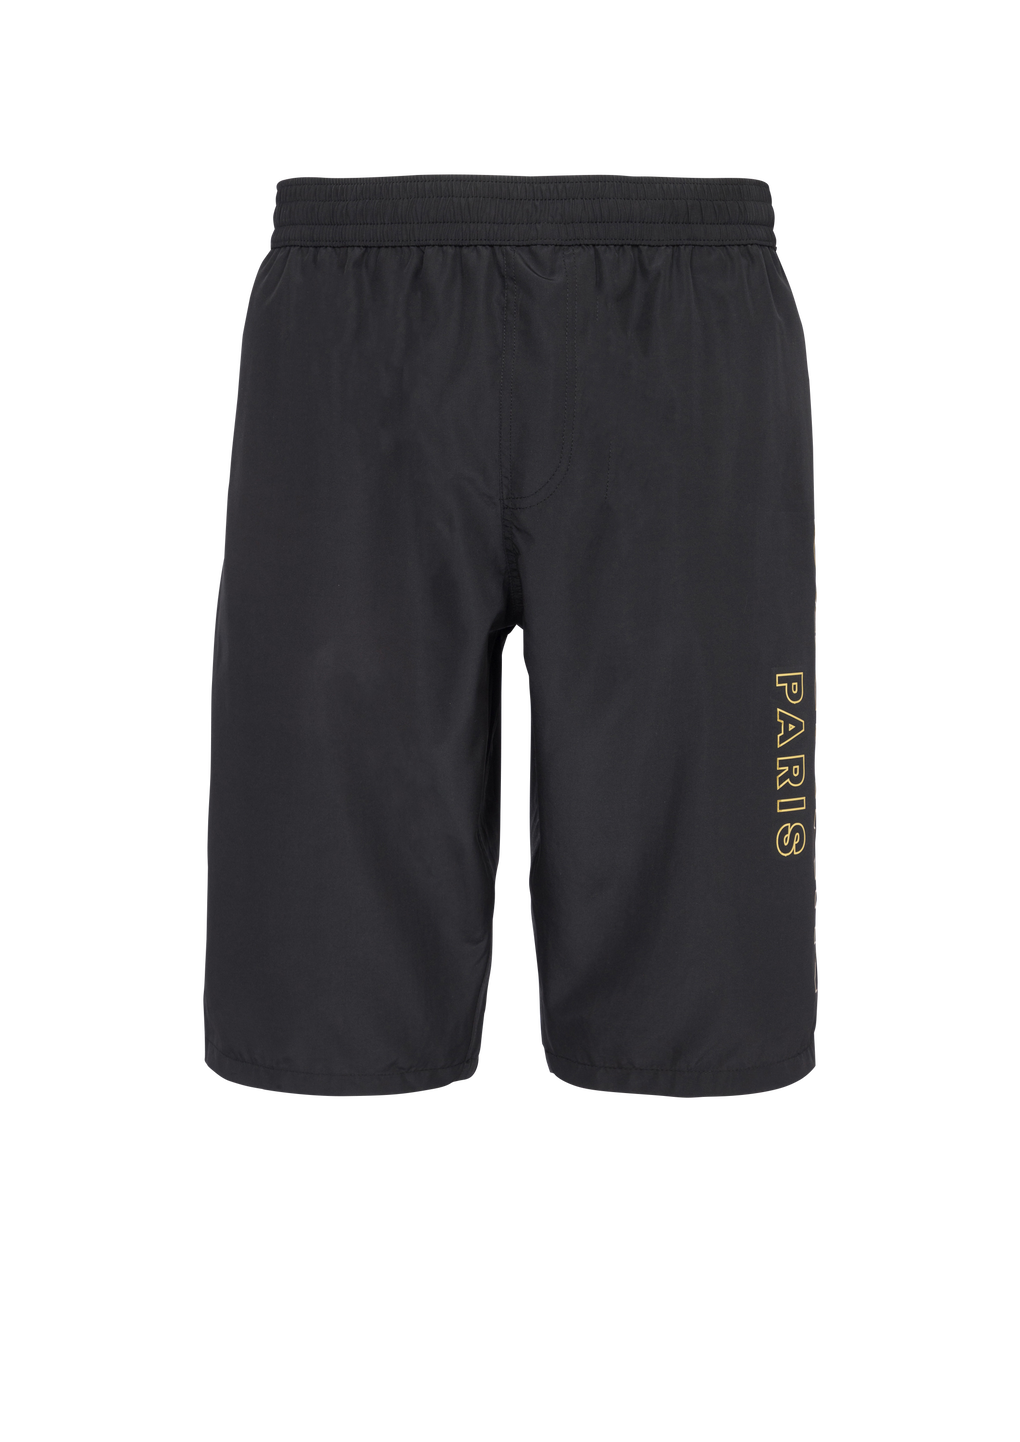 Balmain logo swim shorts, black, hi-res